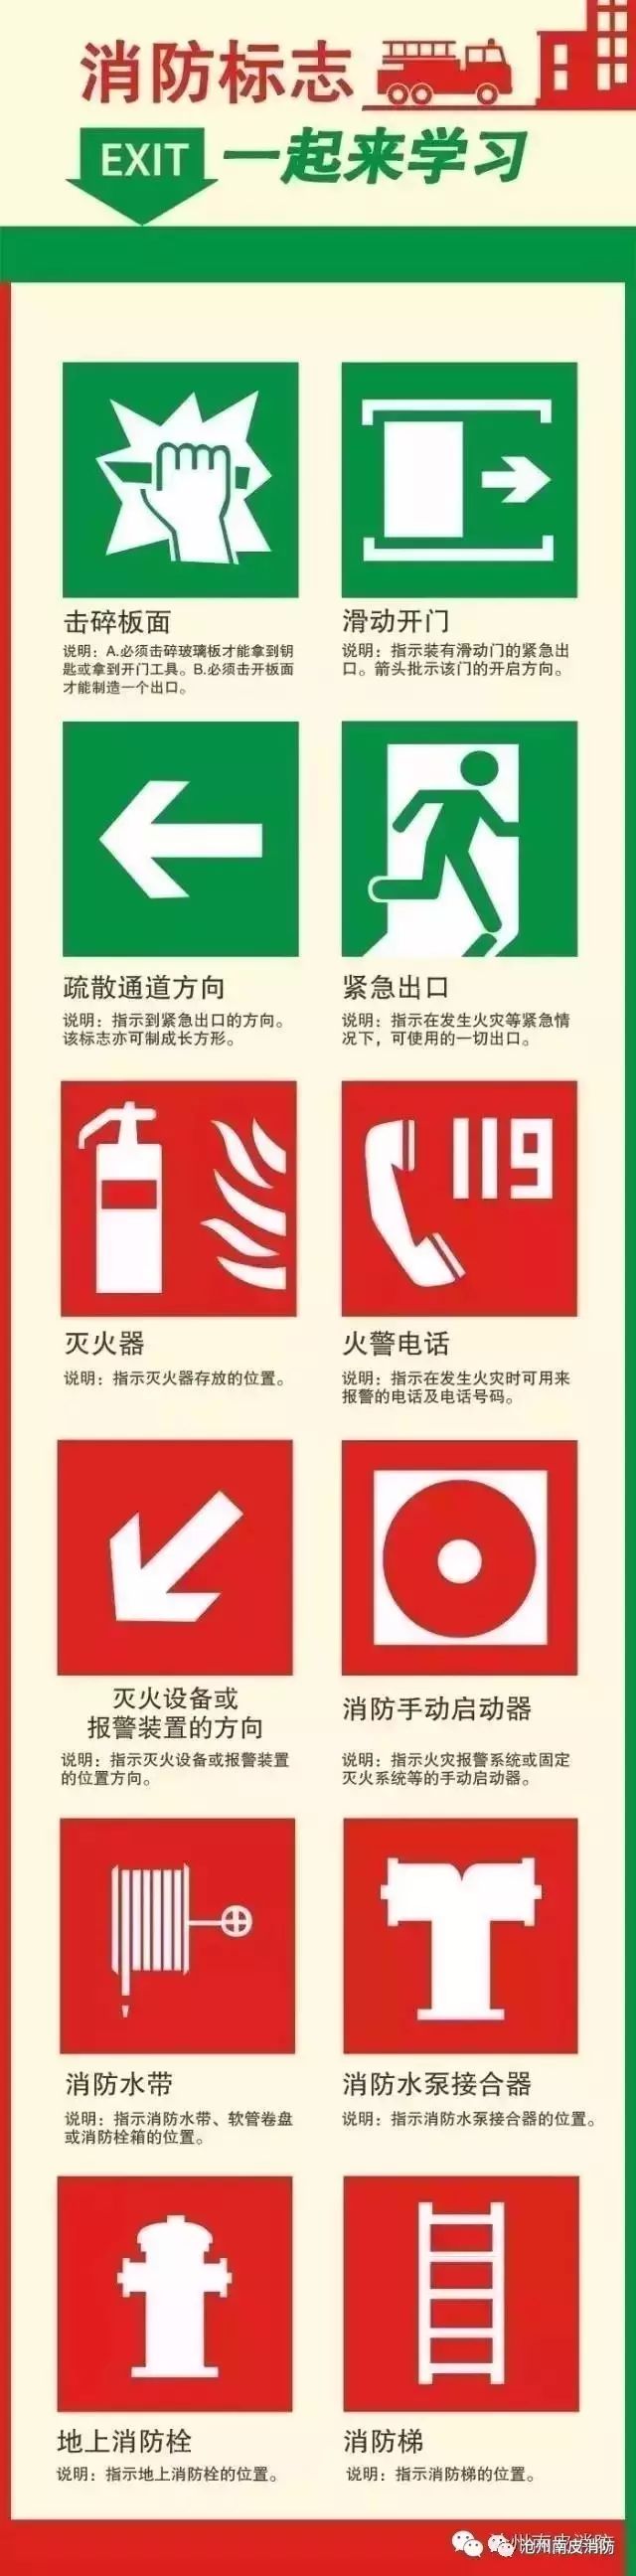 这些消防标志你都知道吗?快来学习吧